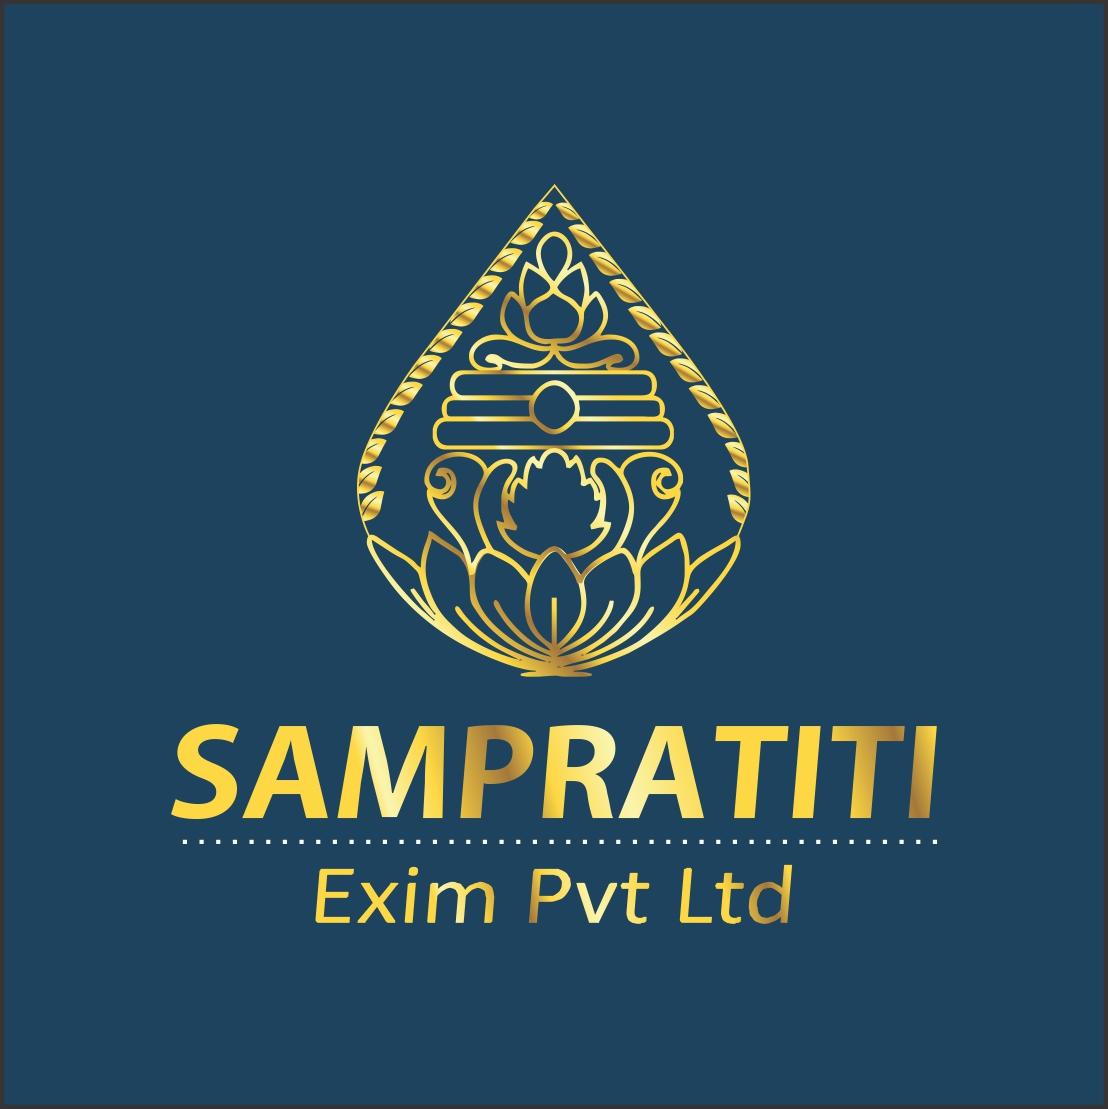 Sampratiti Exim Pvt Ltd